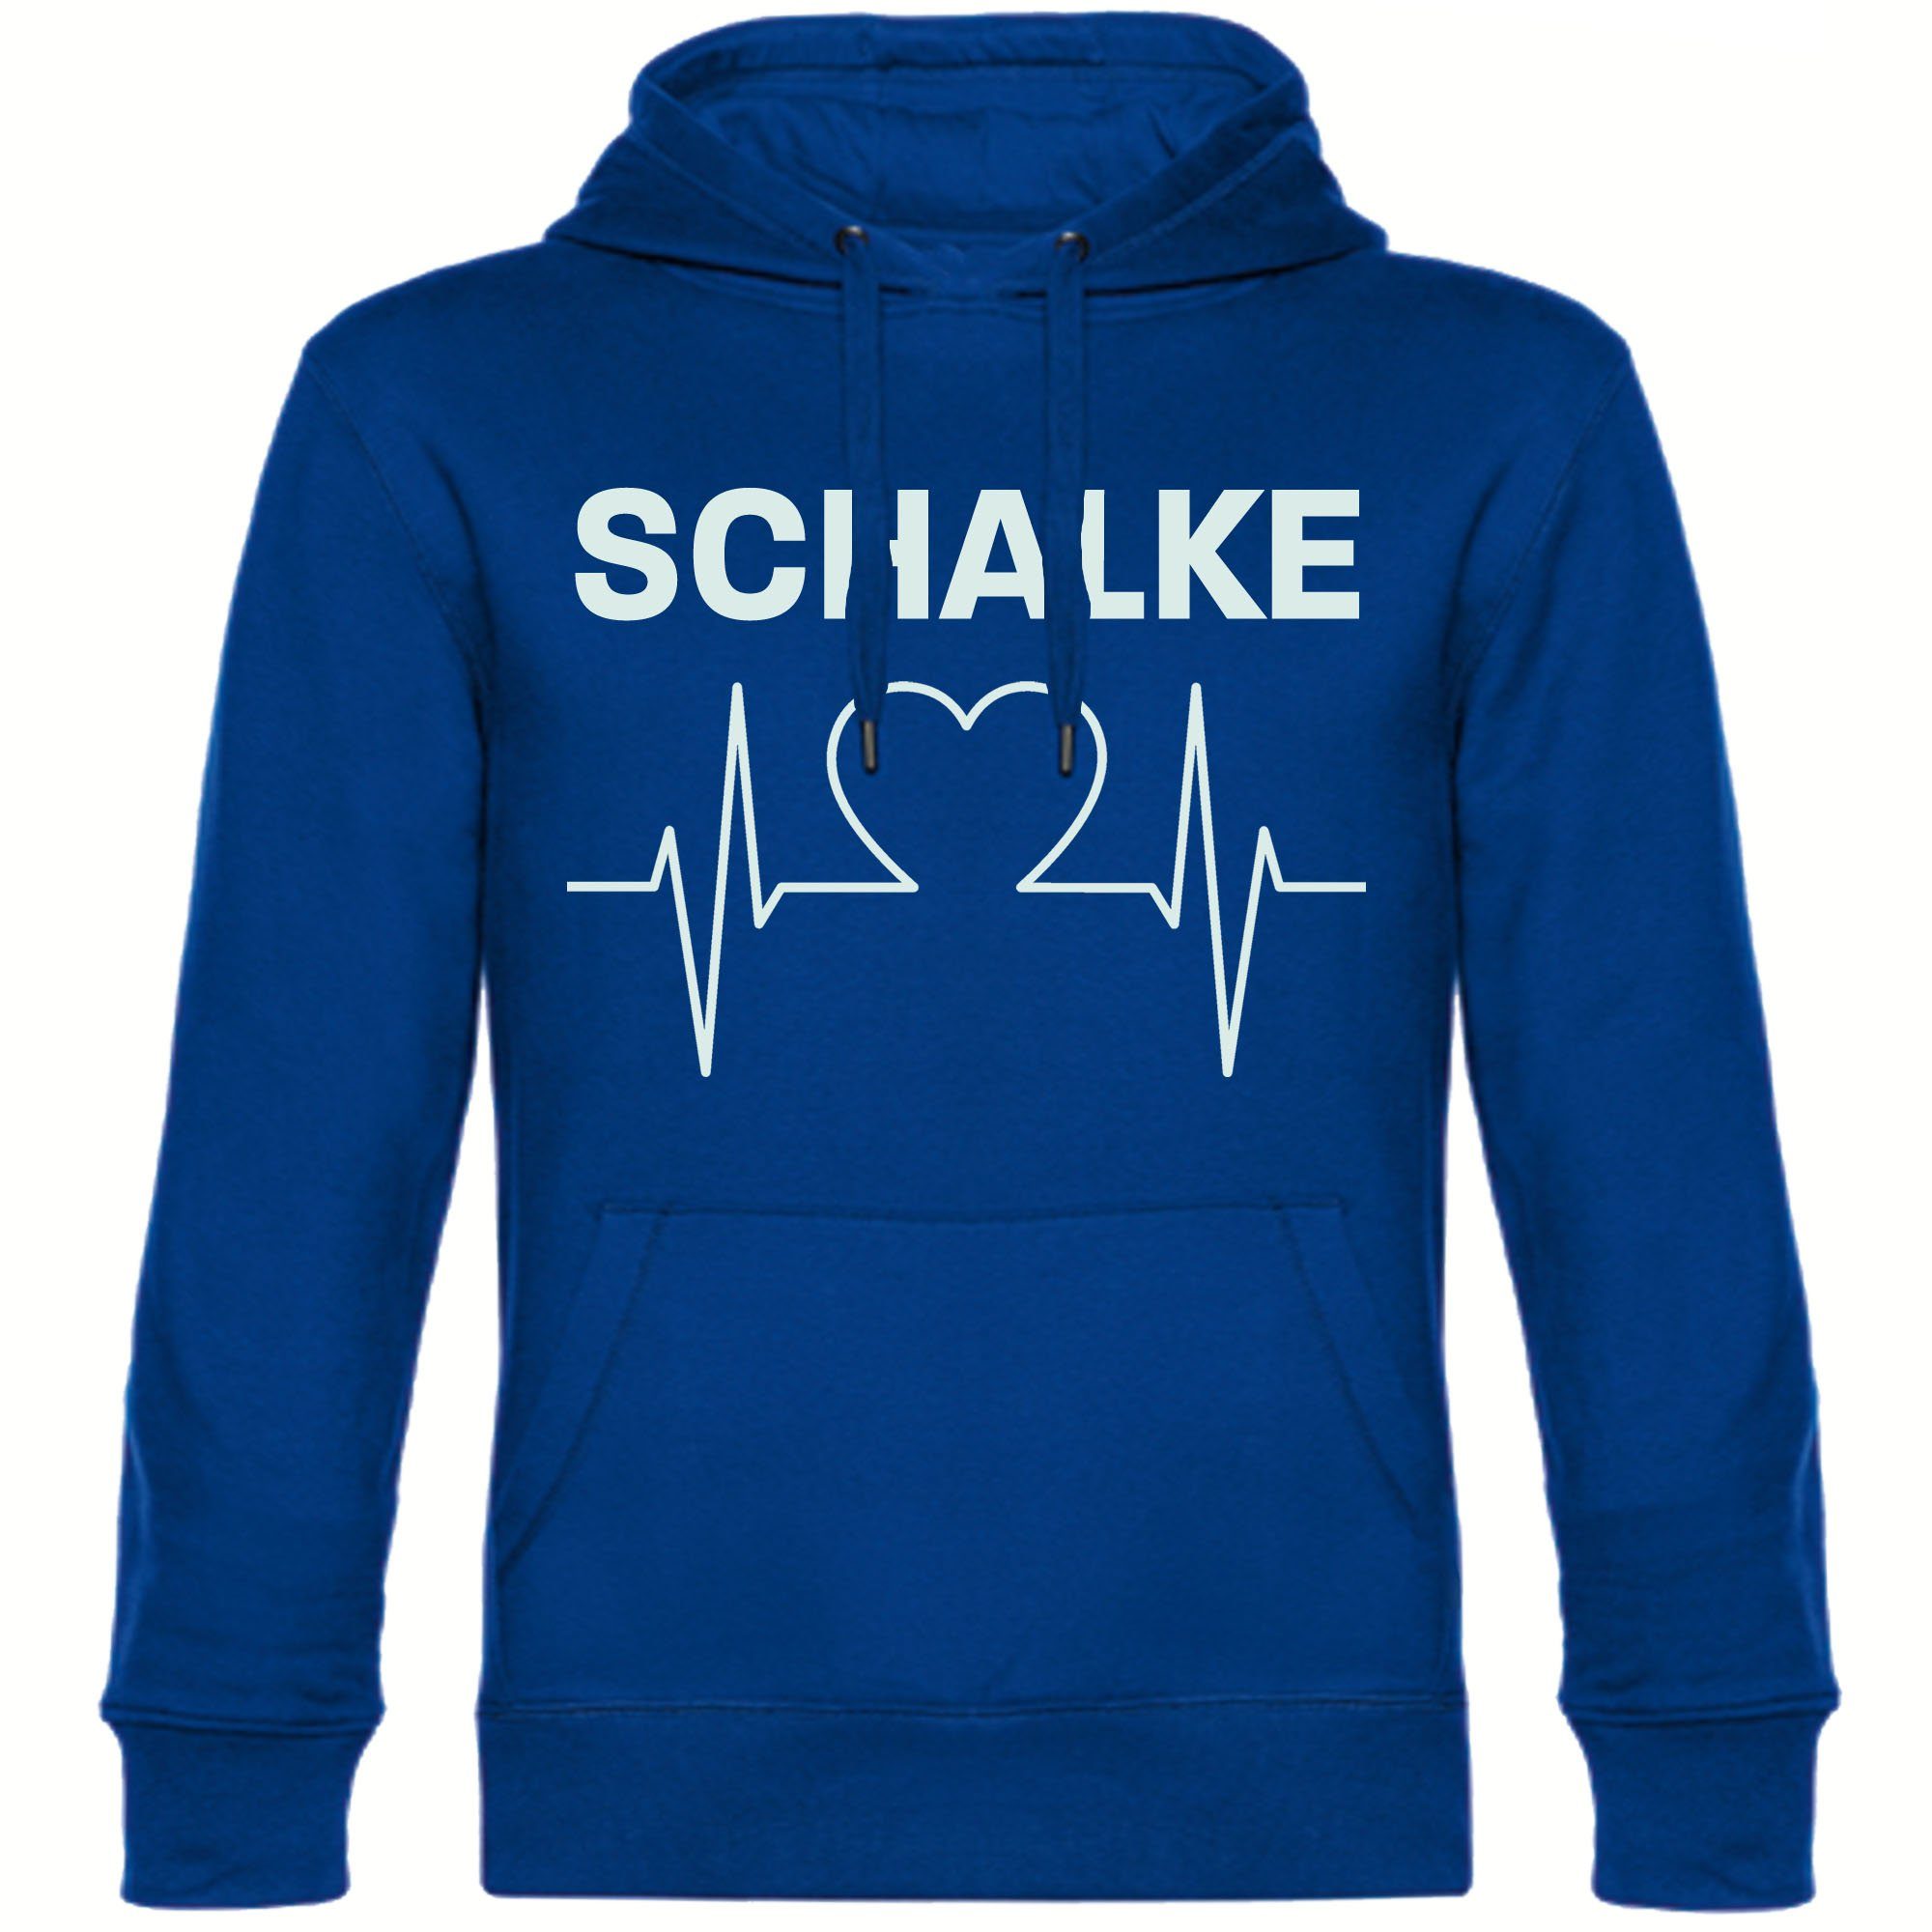 multifanshop Kapuzensweatshirt Schalke - Herzschlag - Pullover